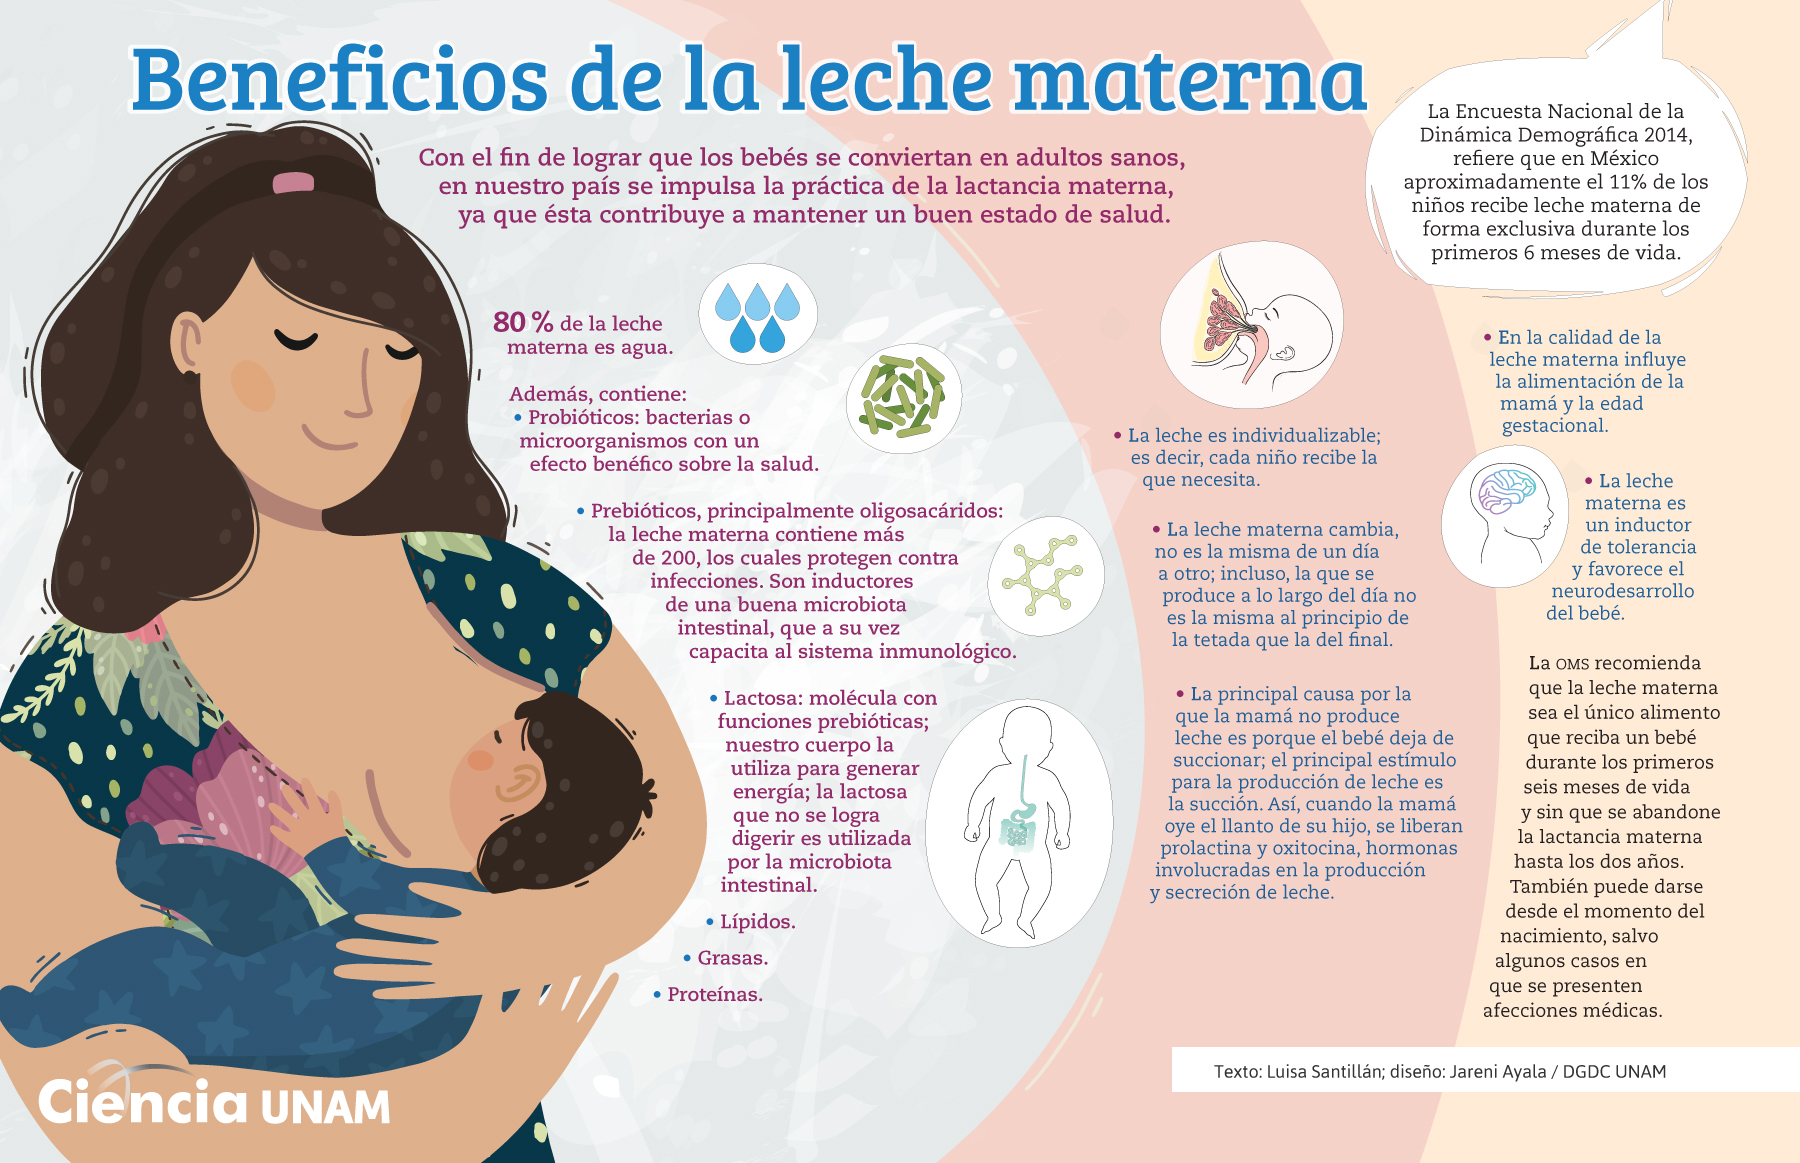 Cetosis y lactancia materna